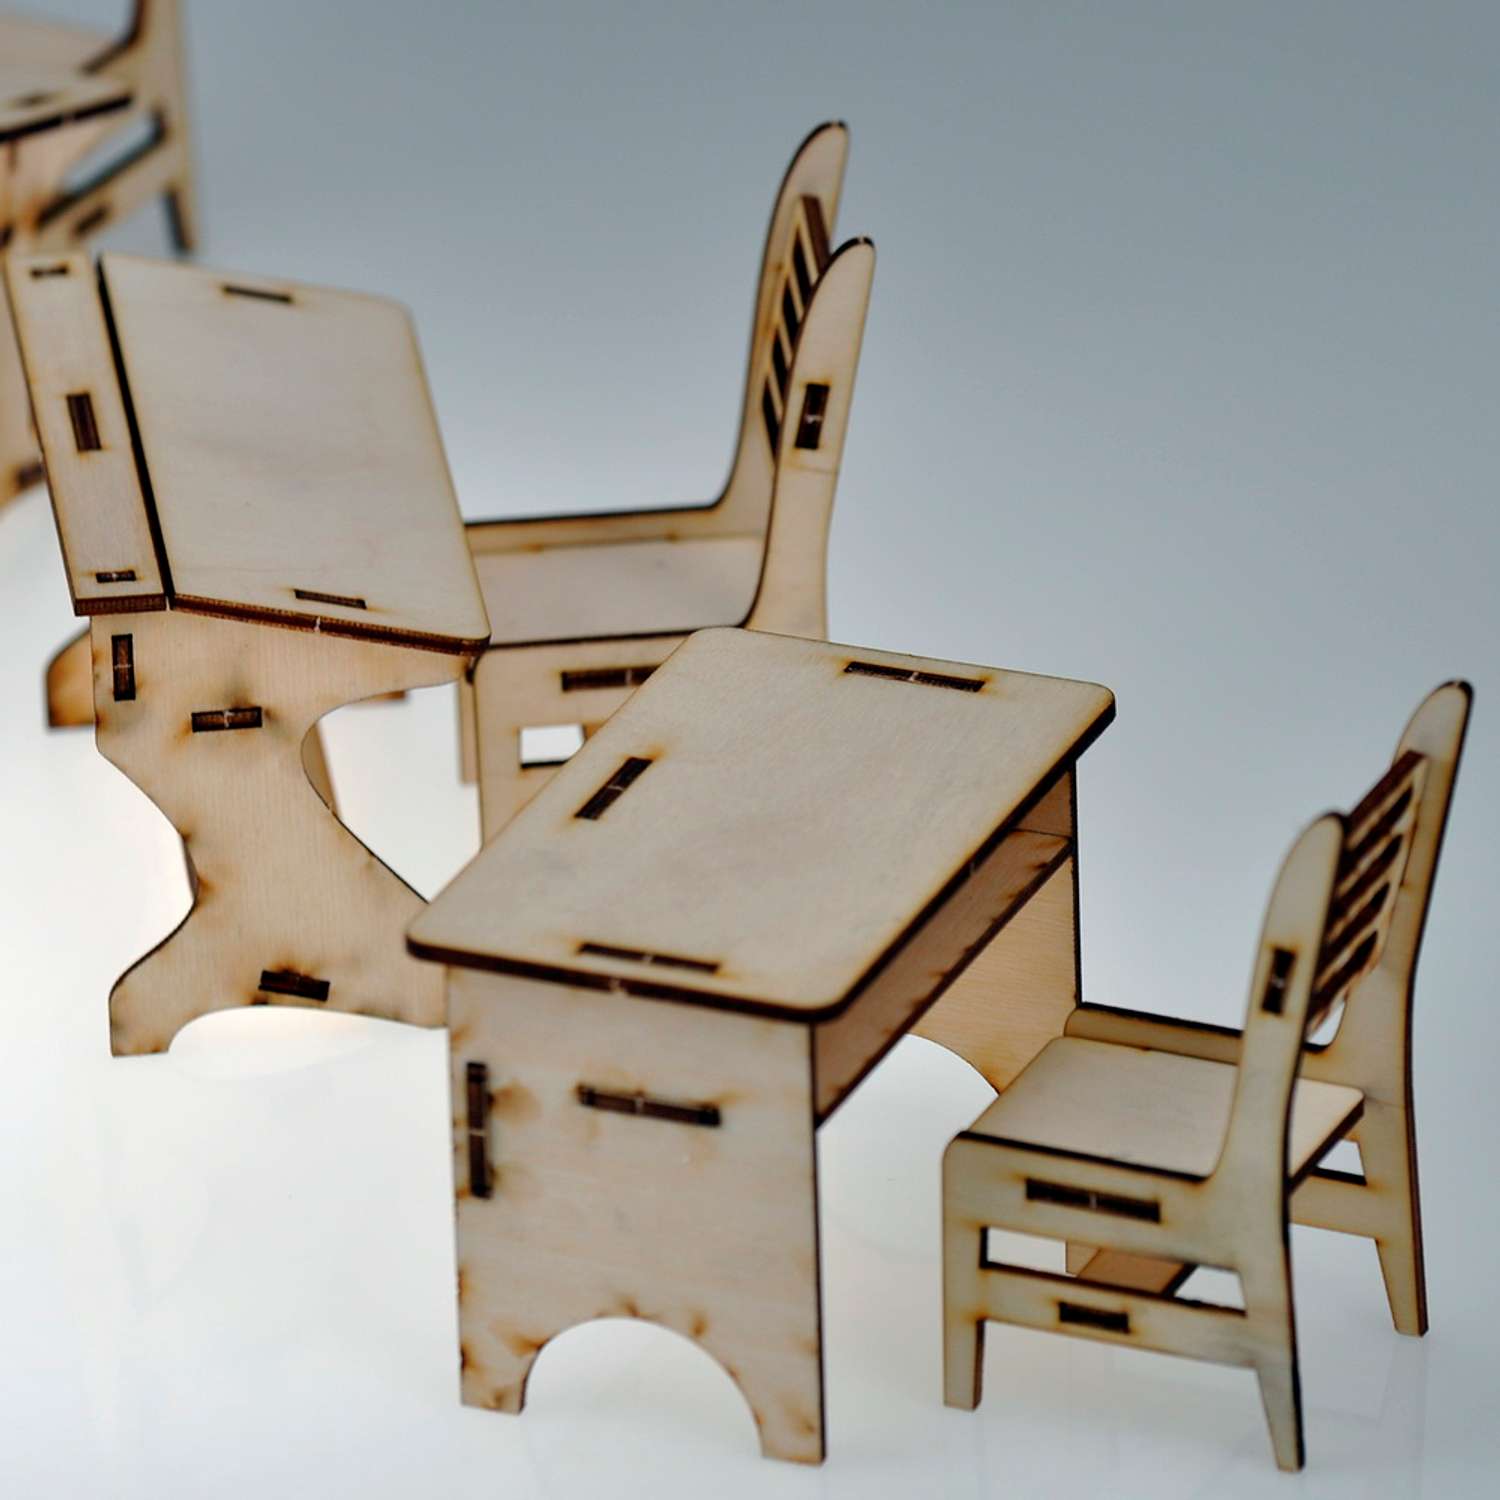 Игровой деревянный класс Amazwood 5 парт- учительский стол - доска - 6 стульев - 6 кукол AW1006 - фото 10